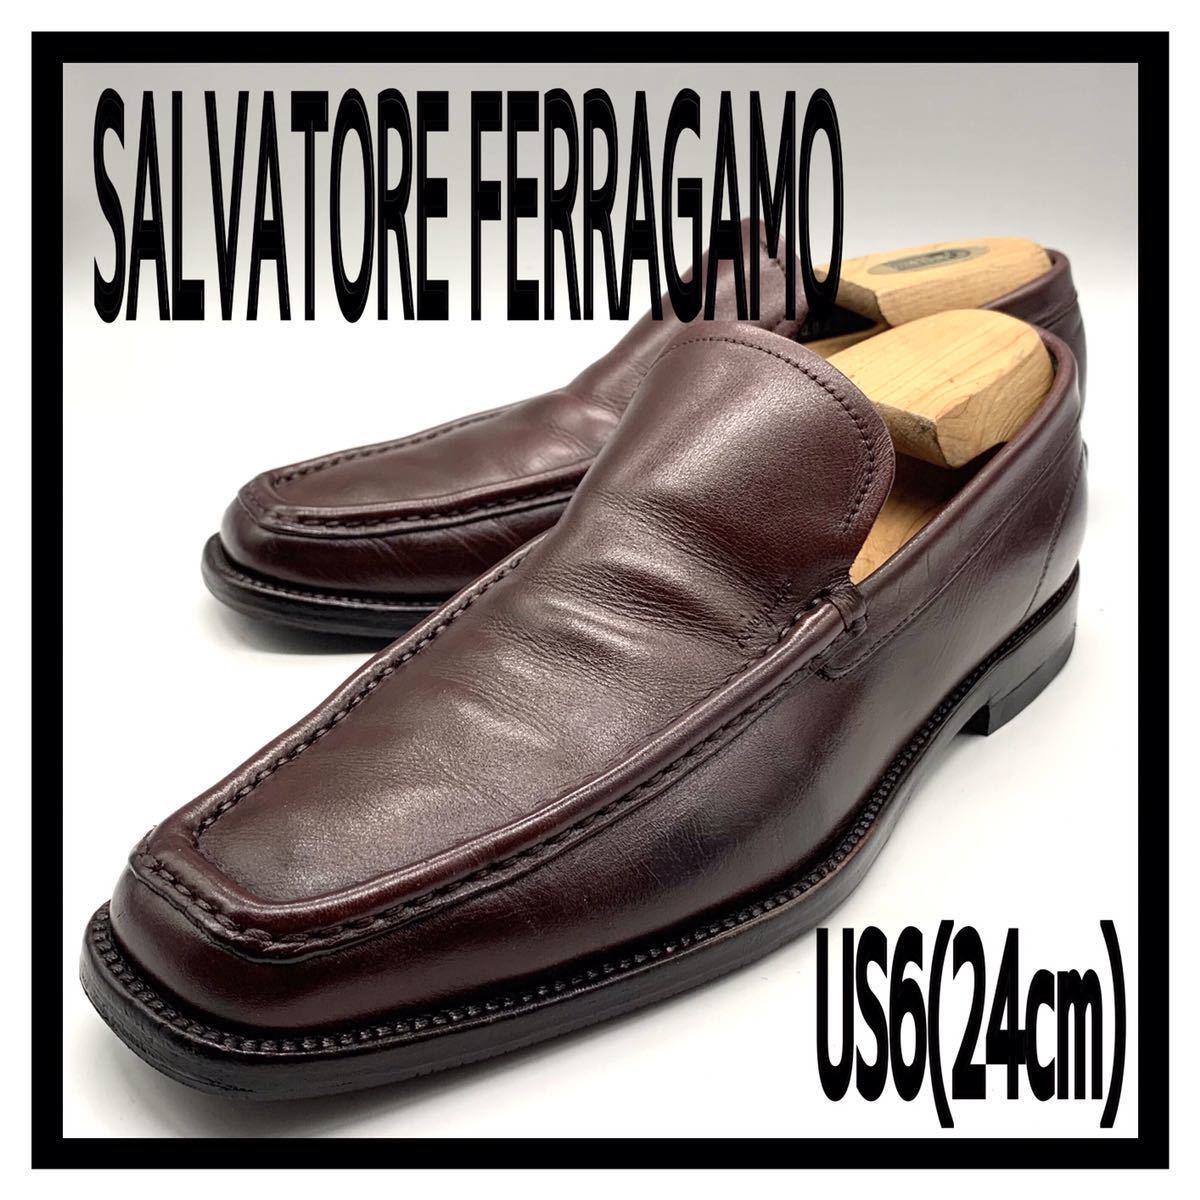 超目玉】 Salvatore 革靴 24cm US6 バーガンディー レザー ビジネス